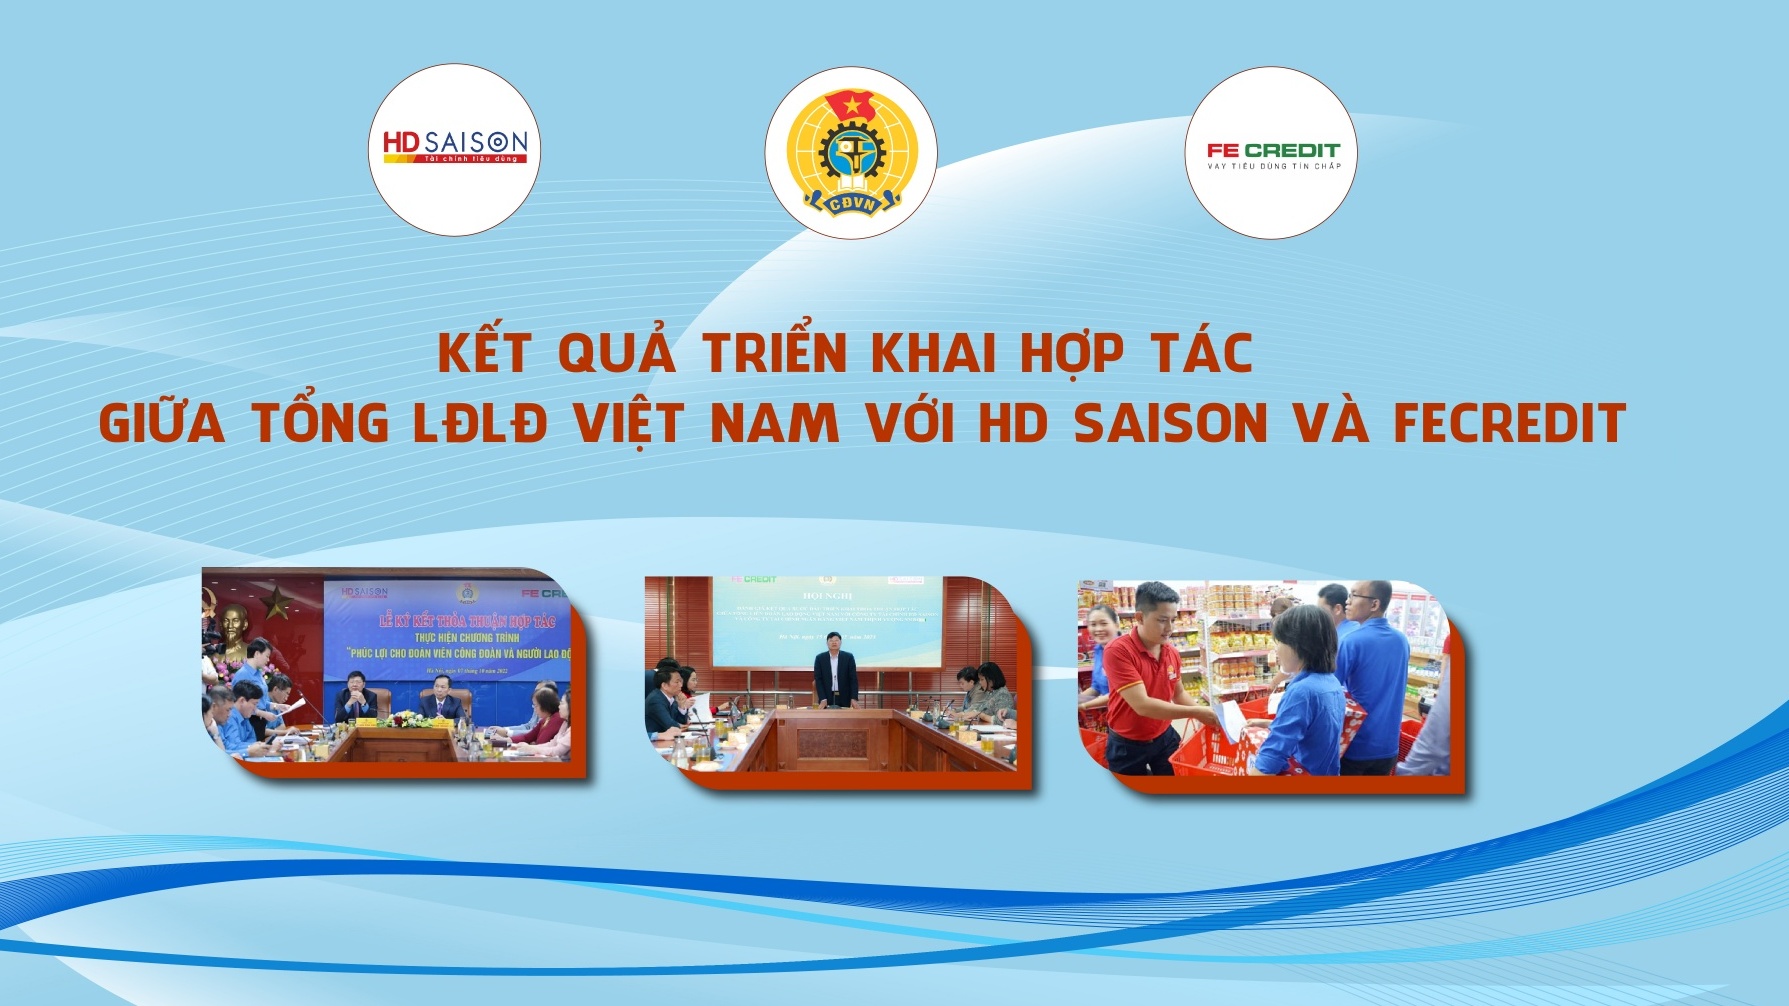 Kết quả triển khai hợp tác giữa Tổng LĐLĐ Việt Nam với HD Saison và FECredit